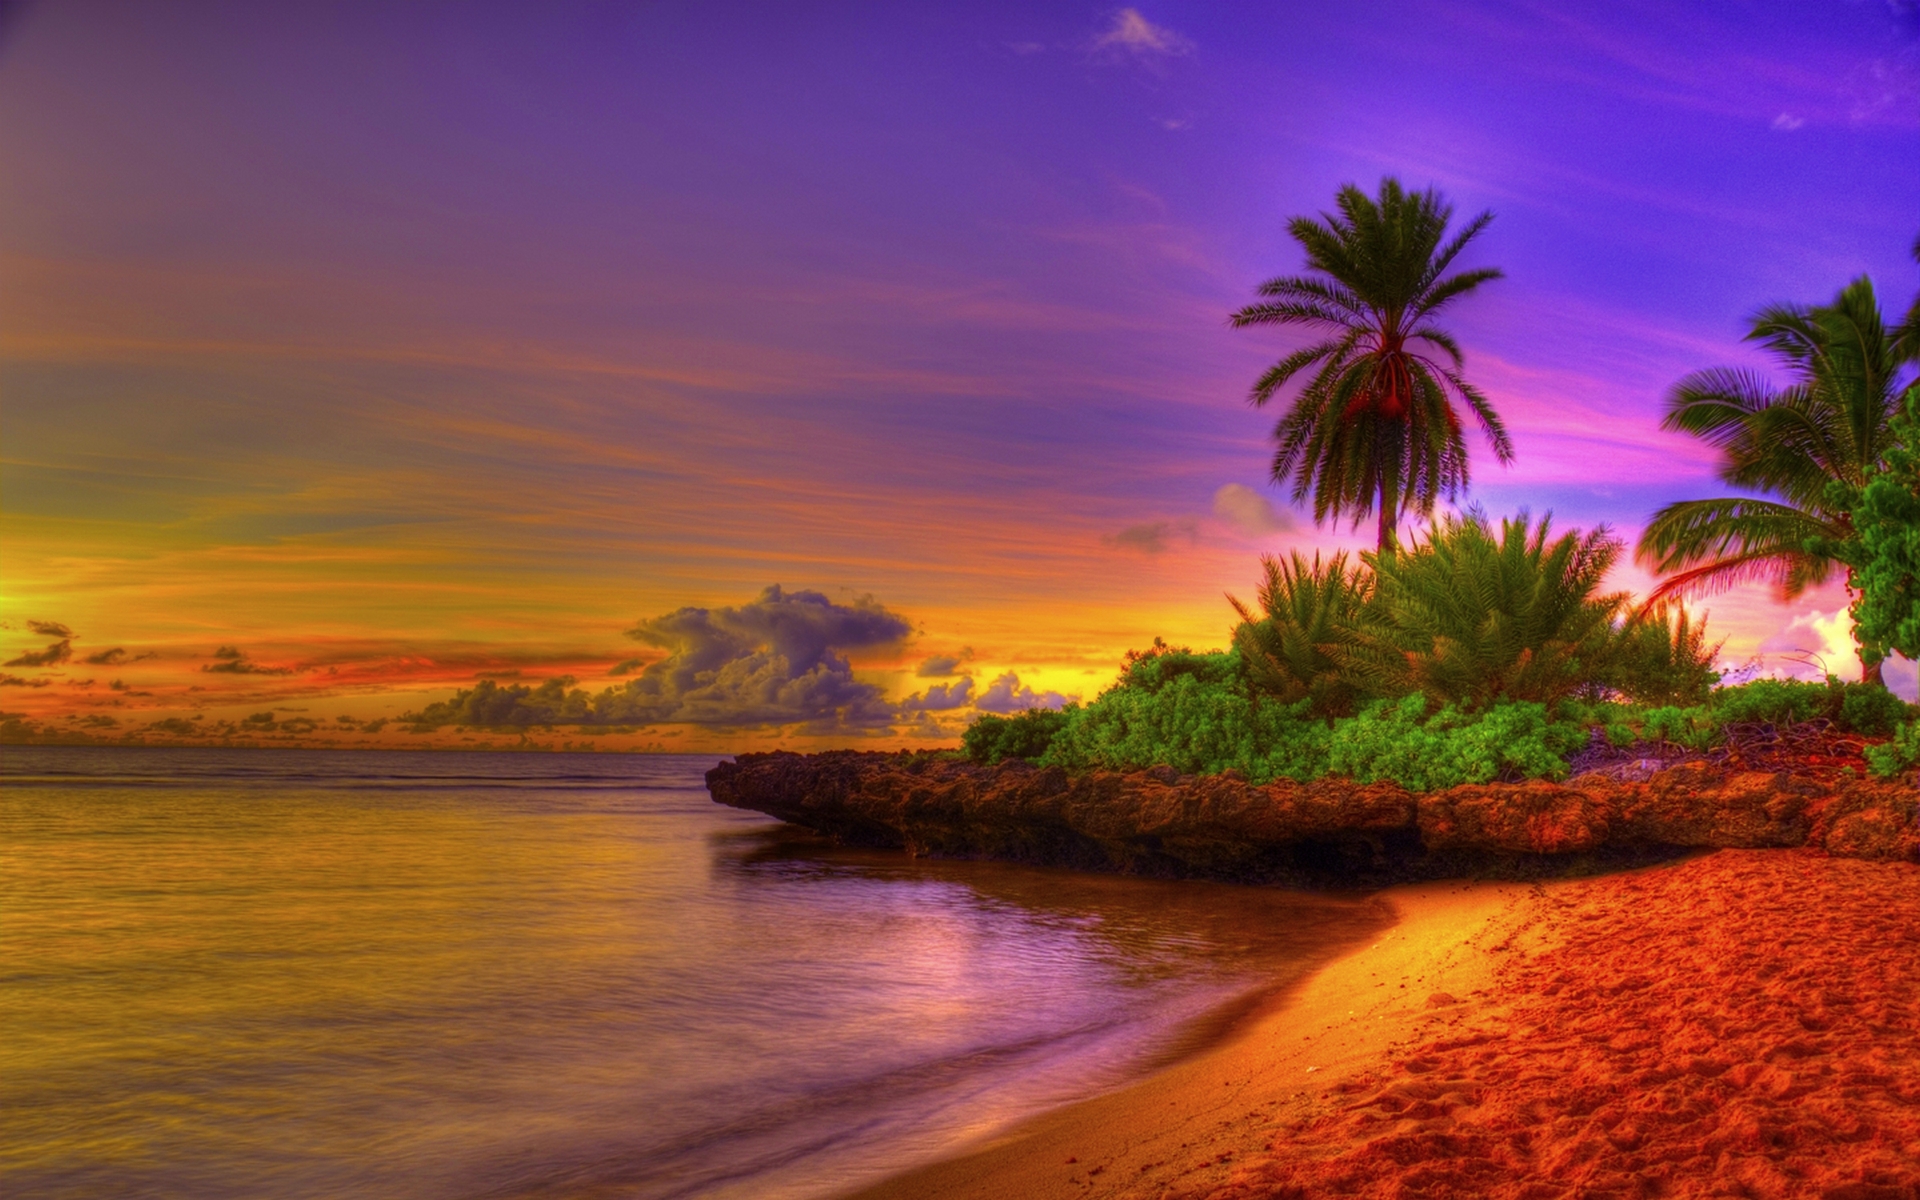  tropical beach image beautiful tropical beach sunset tropical beach 1920x1200